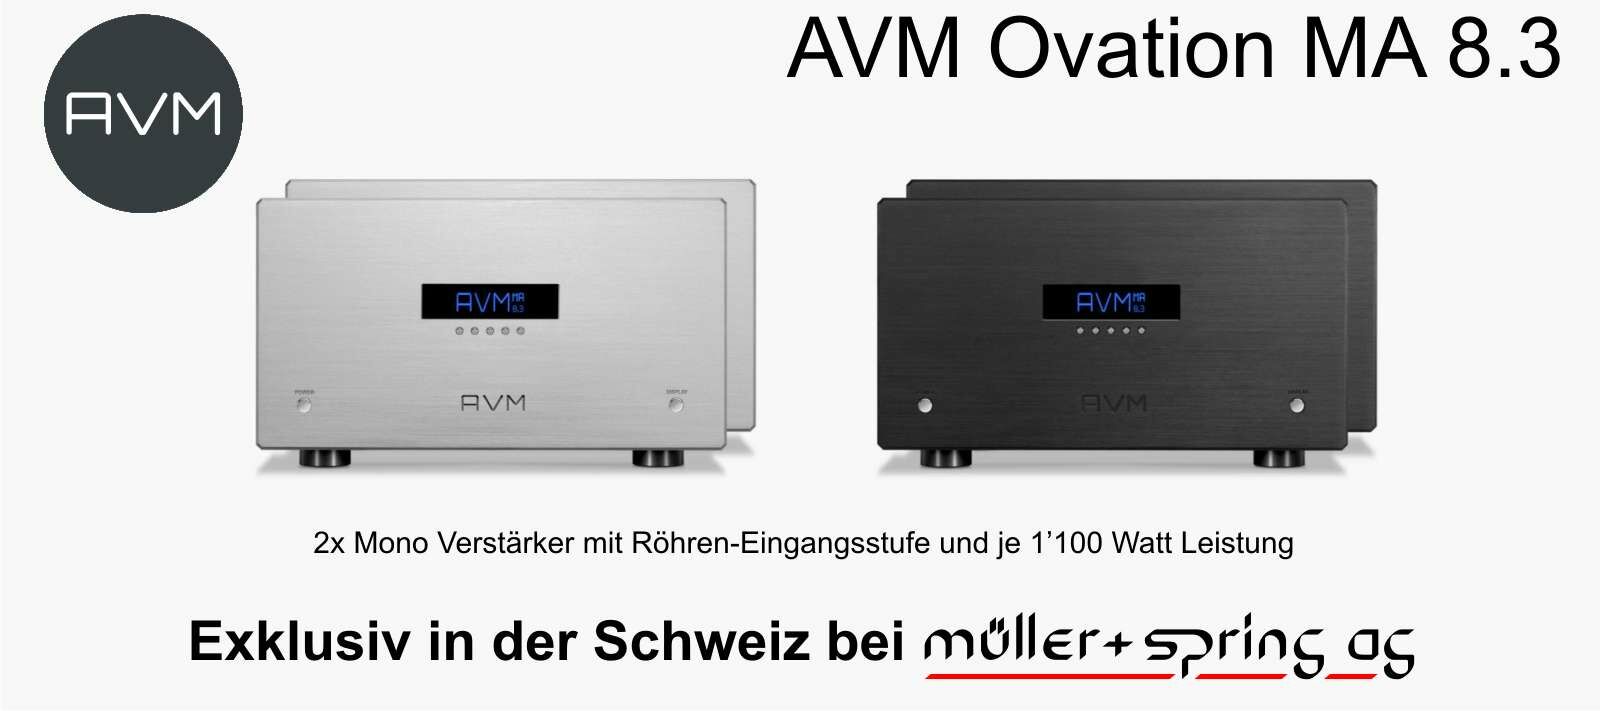 AVM Ovation MA 8.3 - in der Schweiz Exklusiv bei Müller + Spring AG